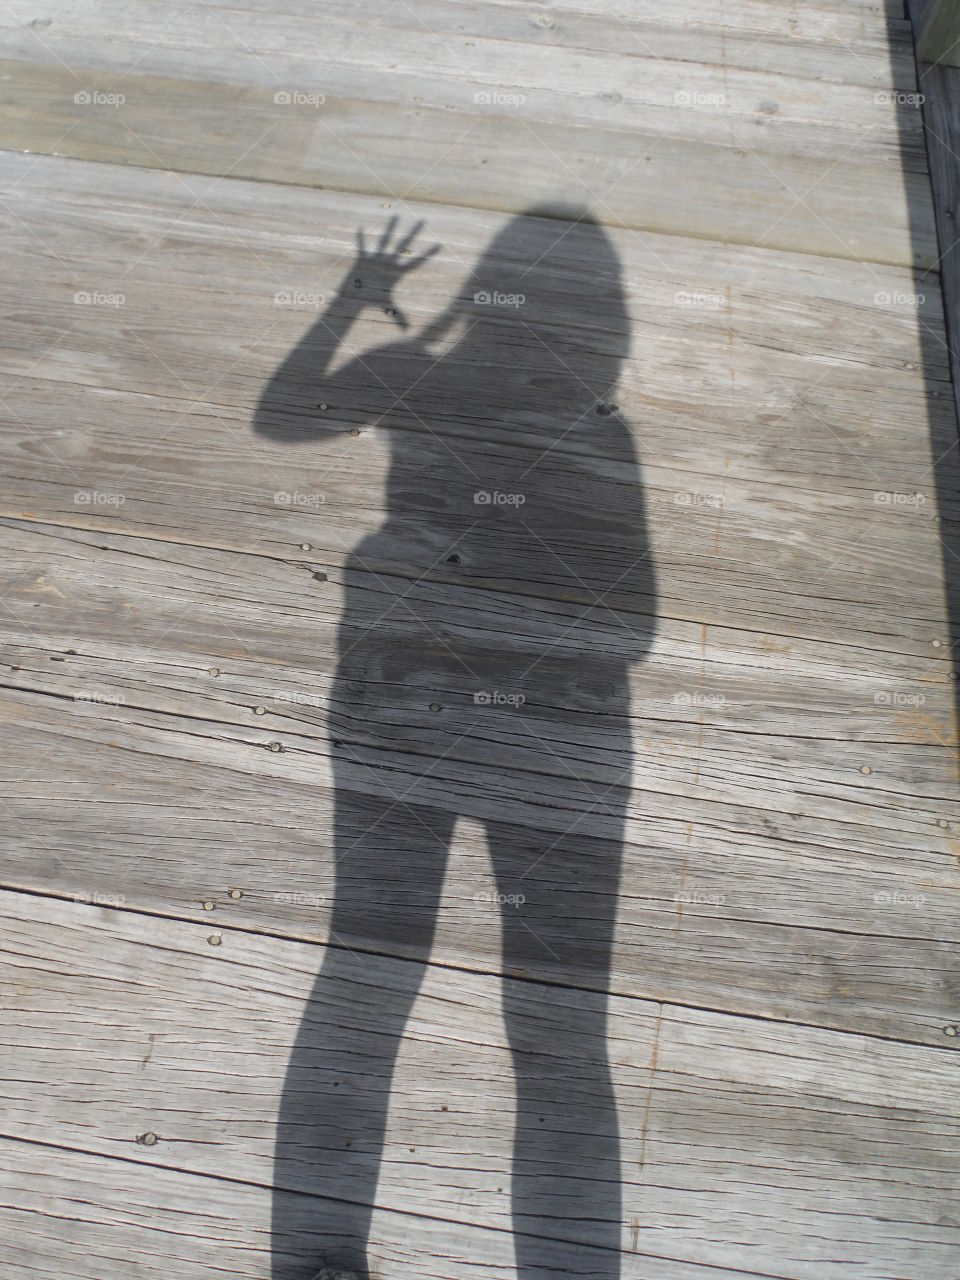 hi shadow. walk the plank